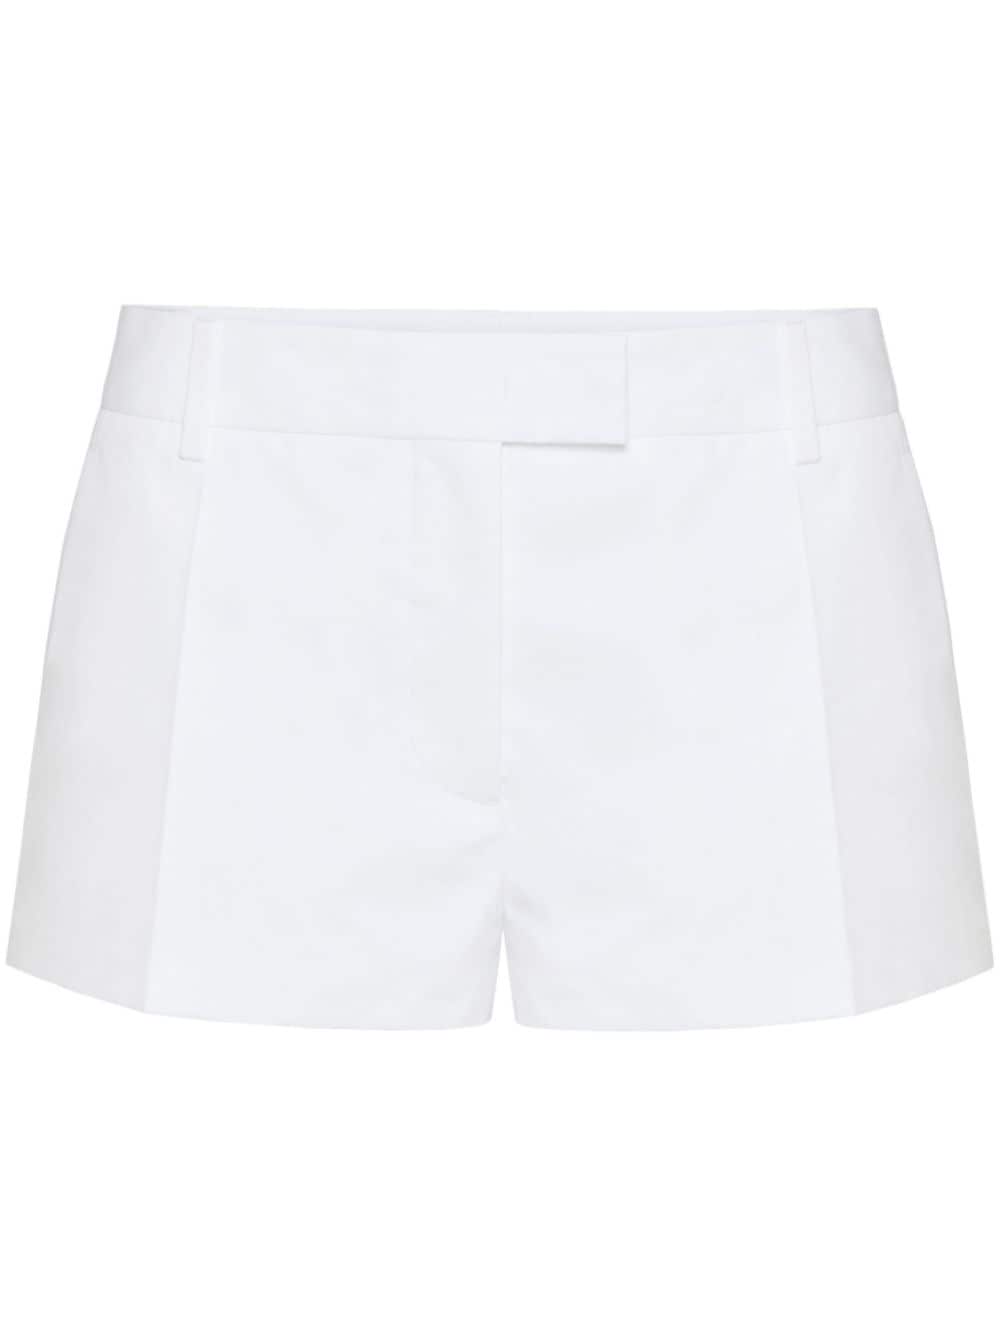 Valentino Garavani tailored cotton shorts - White von Valentino Garavani